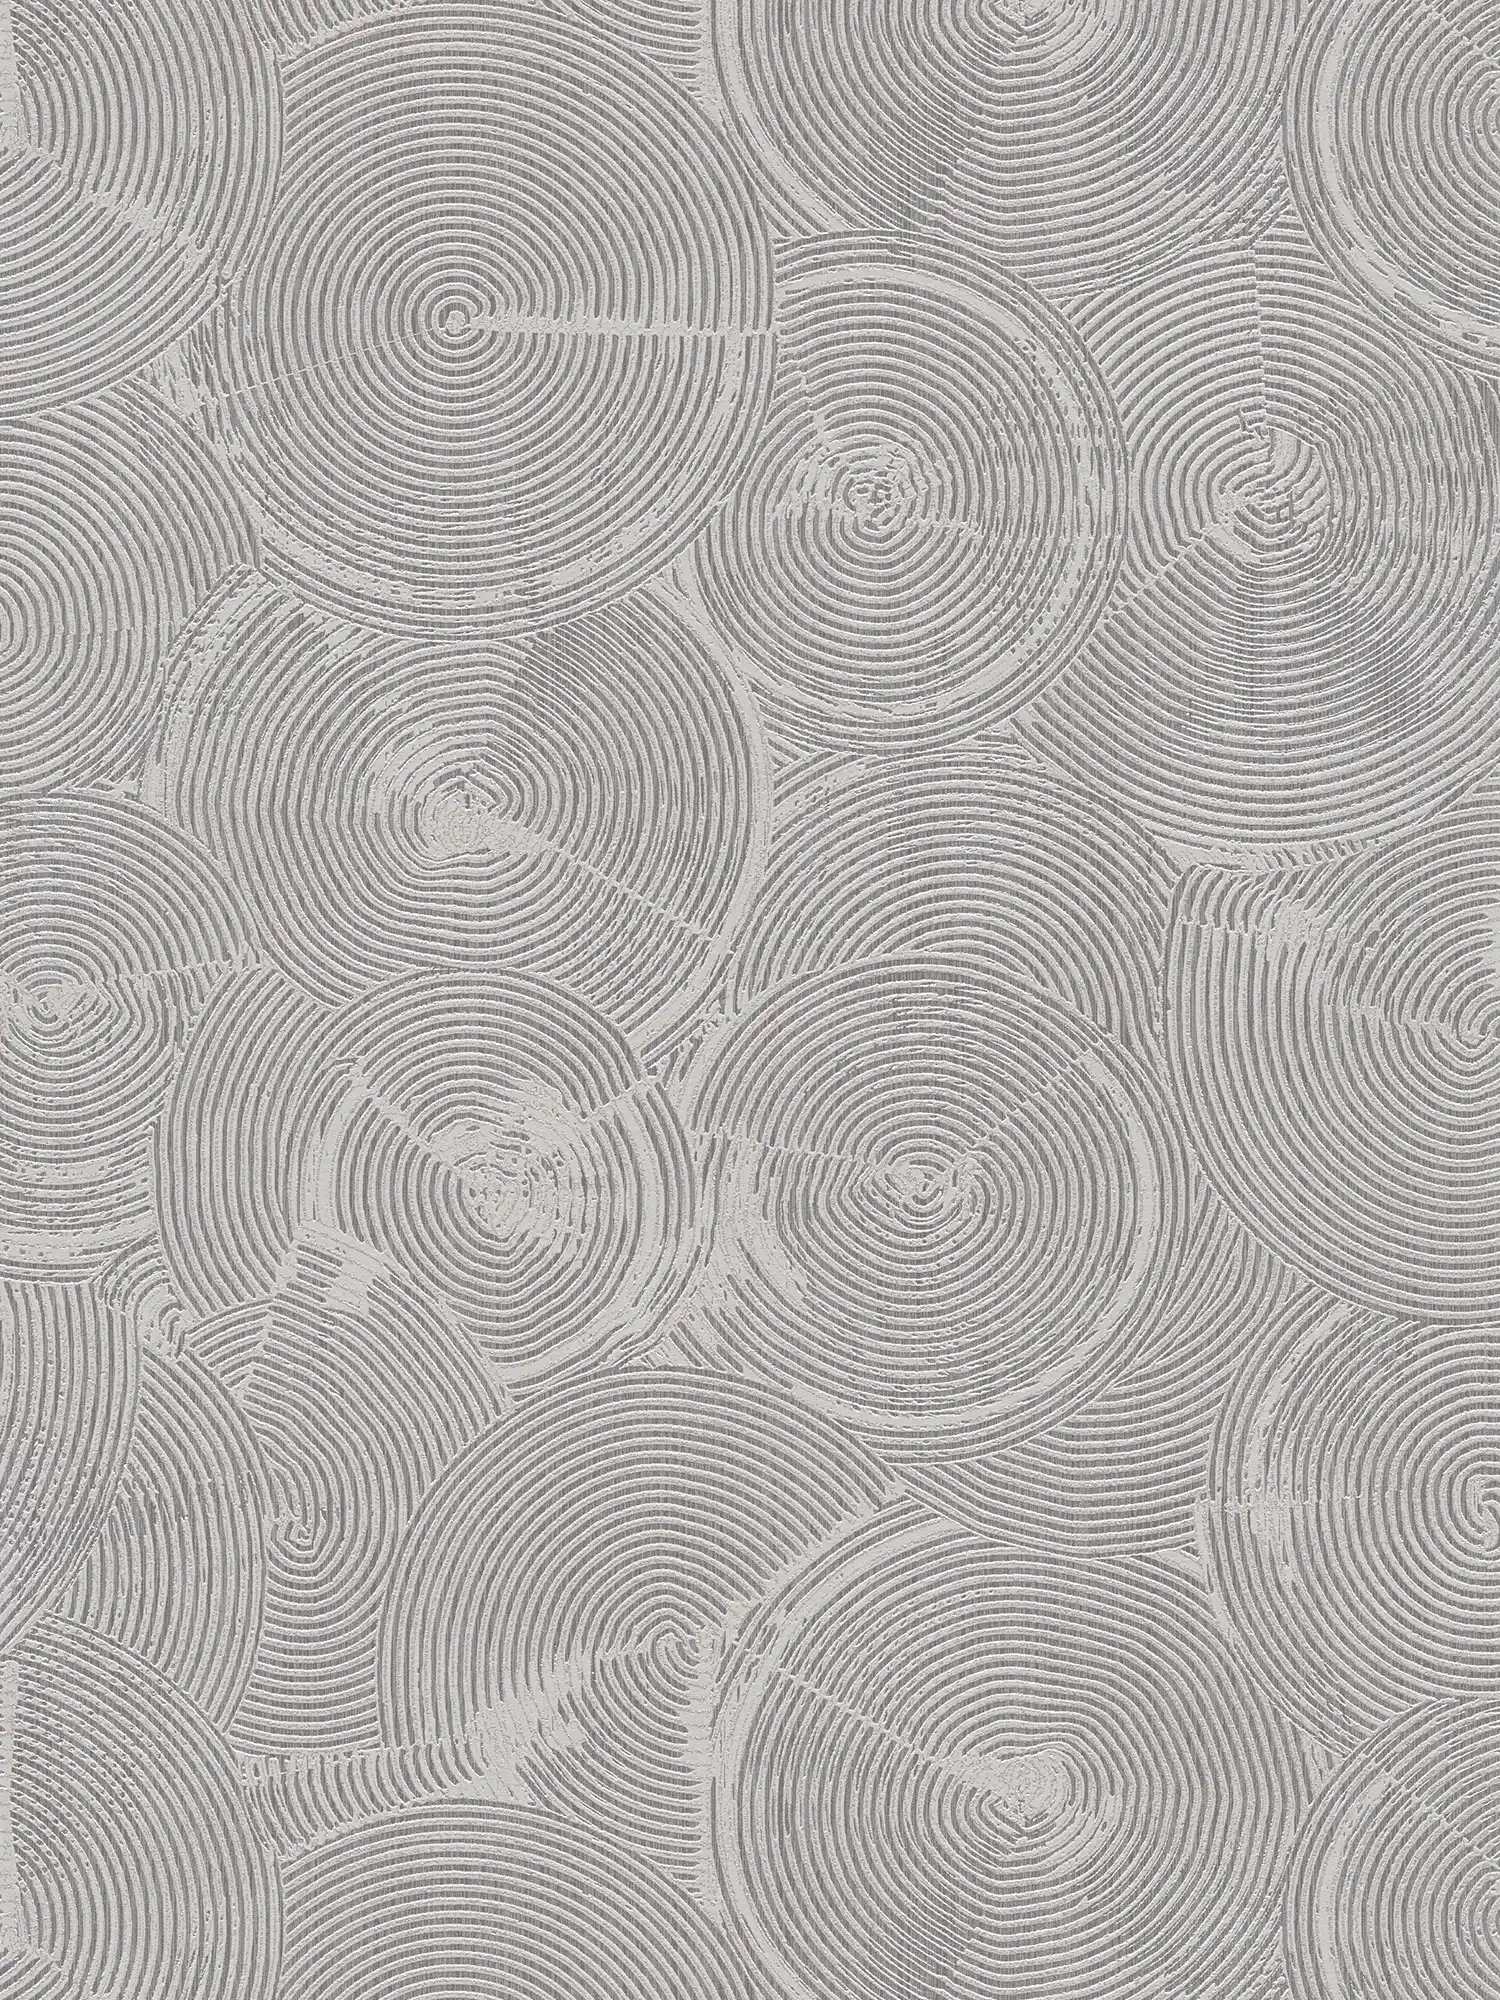 Carta da parati in gesso ottico con effetto metallizzato argento - grigio, metallizzato, bianco
